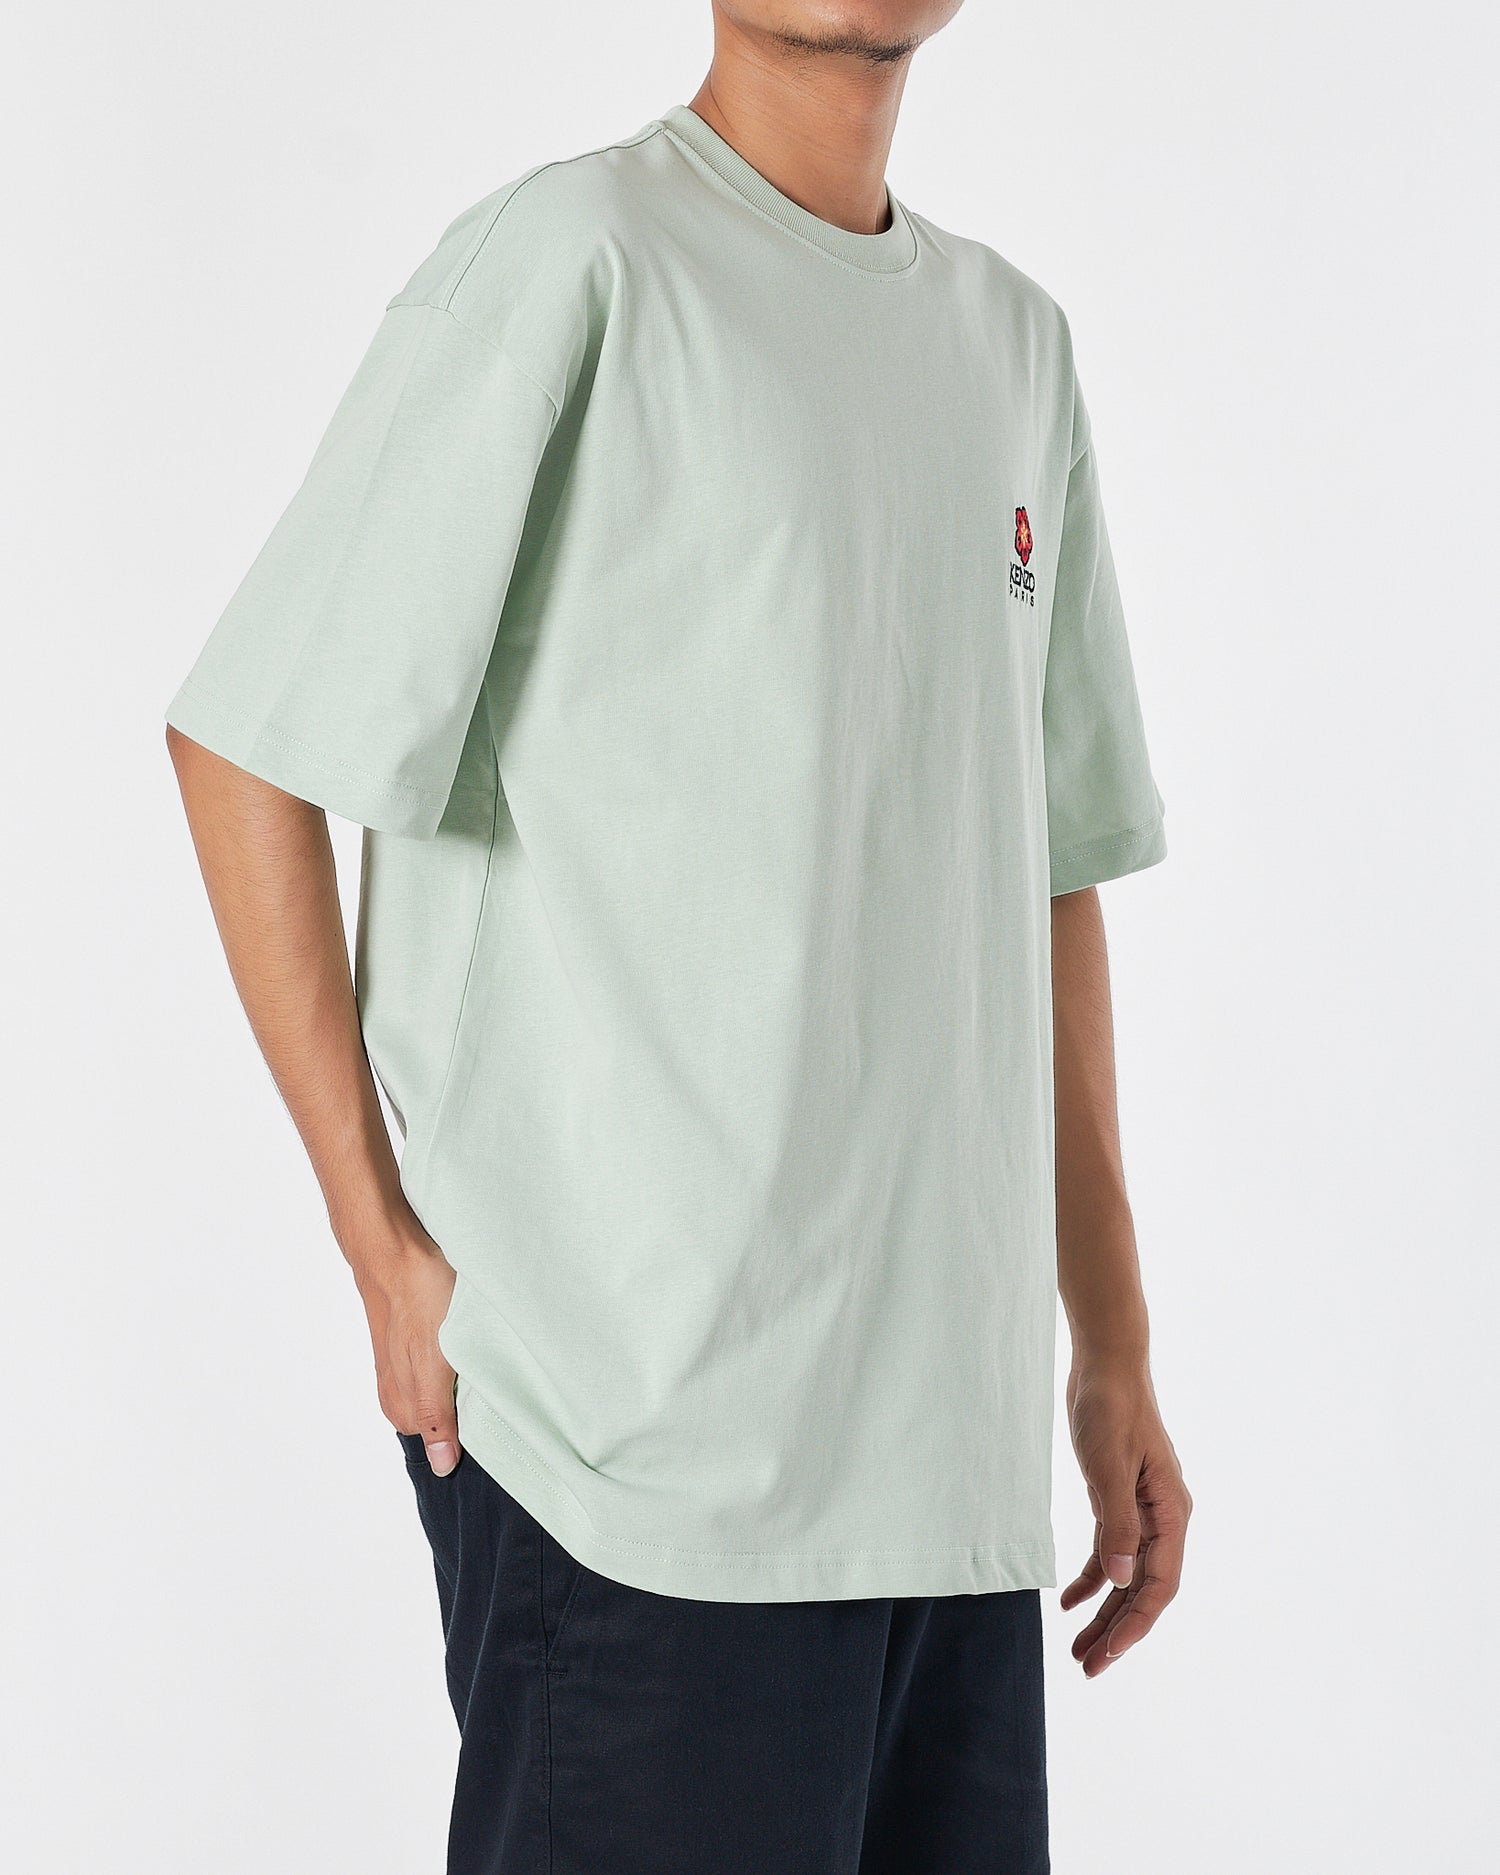 KEN Flower Embroidered Men Green T-Shirt 17.90